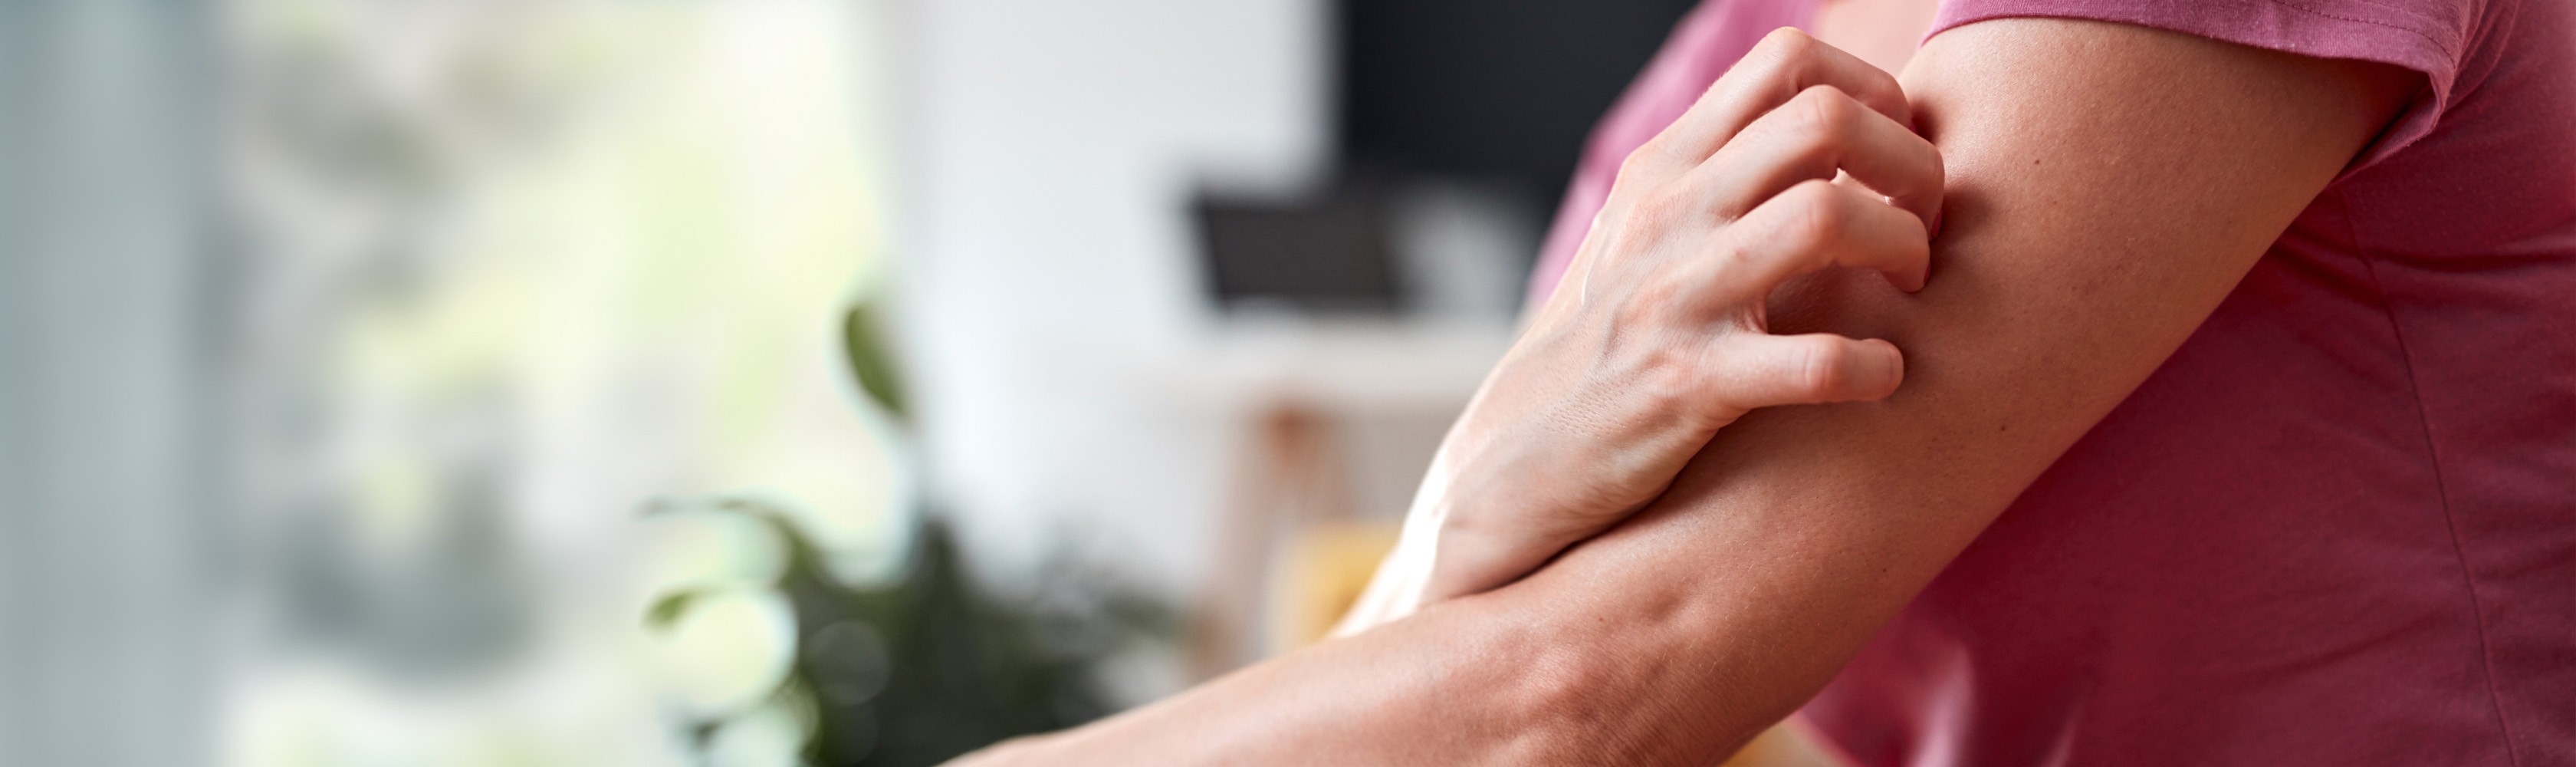 Una donna seduta sul divano a casa si gratta un eczema sul braccio.